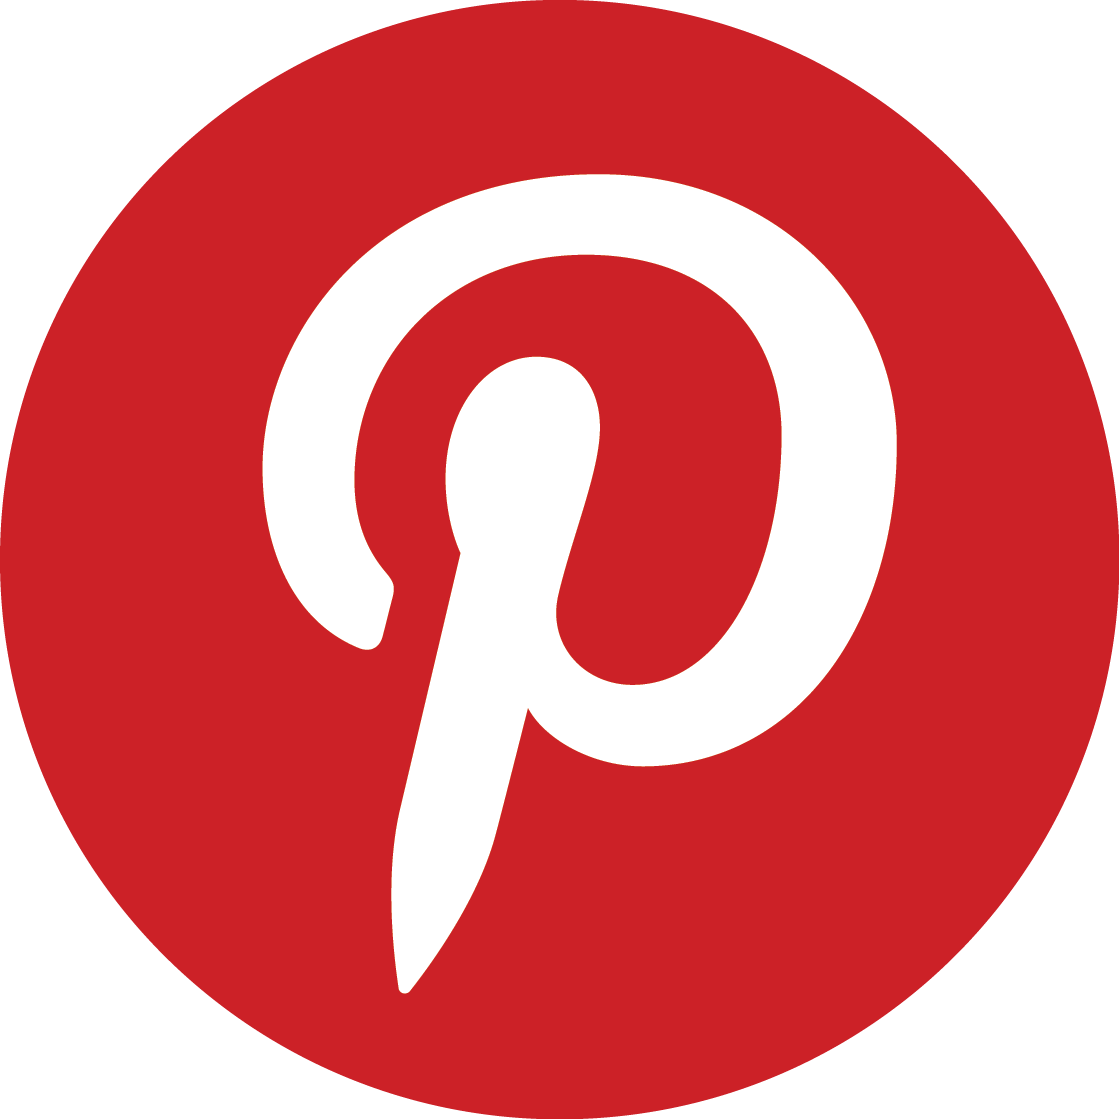 Pinterest Logo Png - Free Transparent PNG Logos